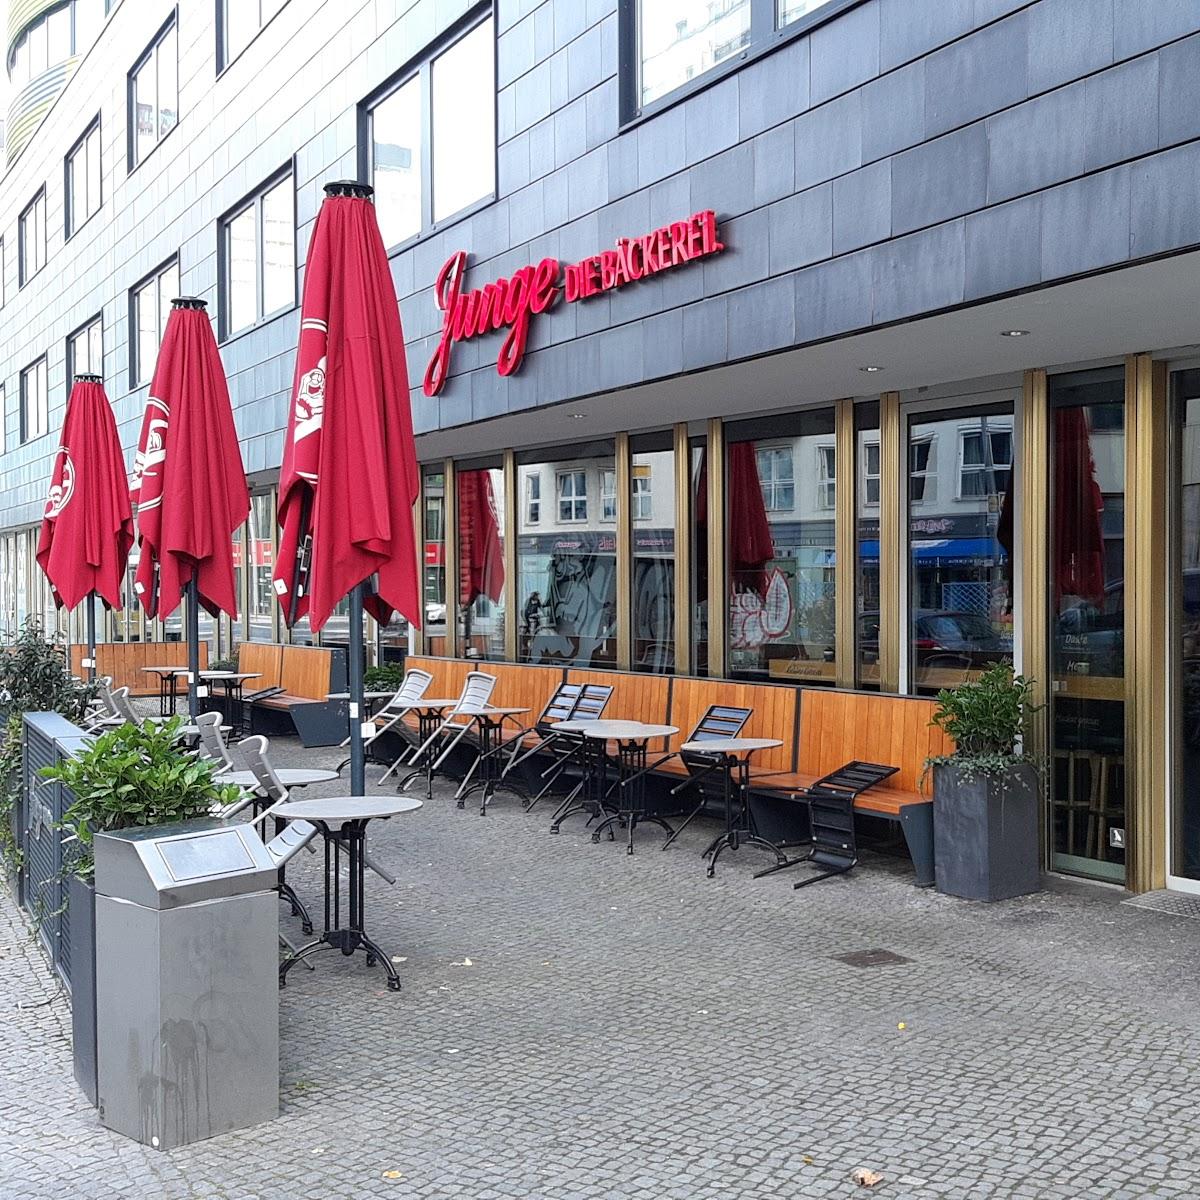 Restaurant "Junge Die Bäckerei." in Berlin